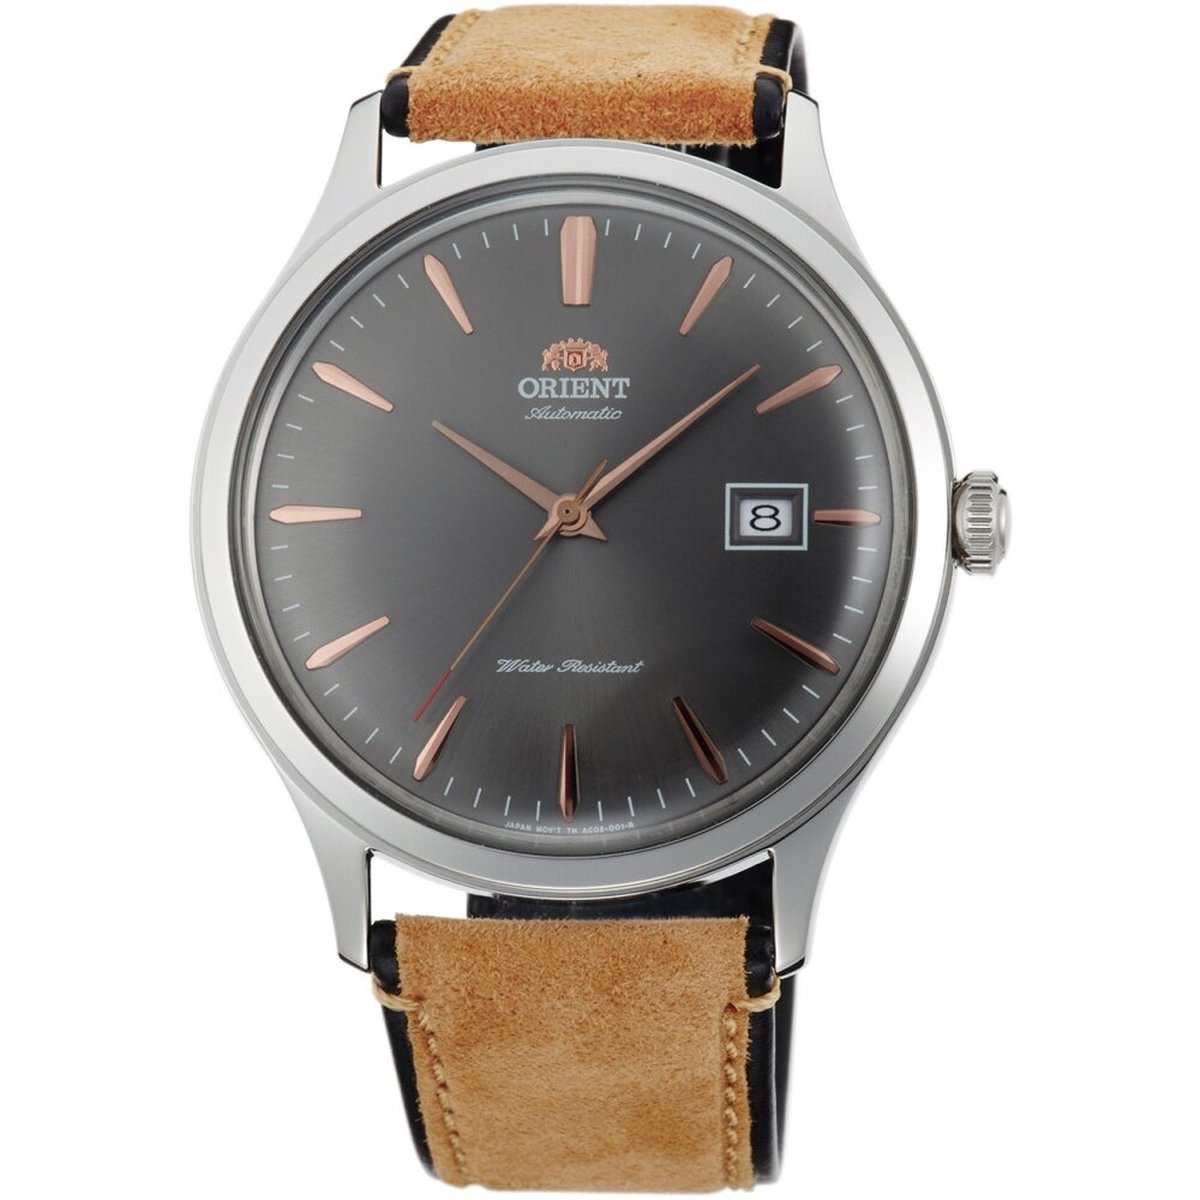 Orient - Horloge - Heren - Automatisch - Klassiek - FAC08003A0